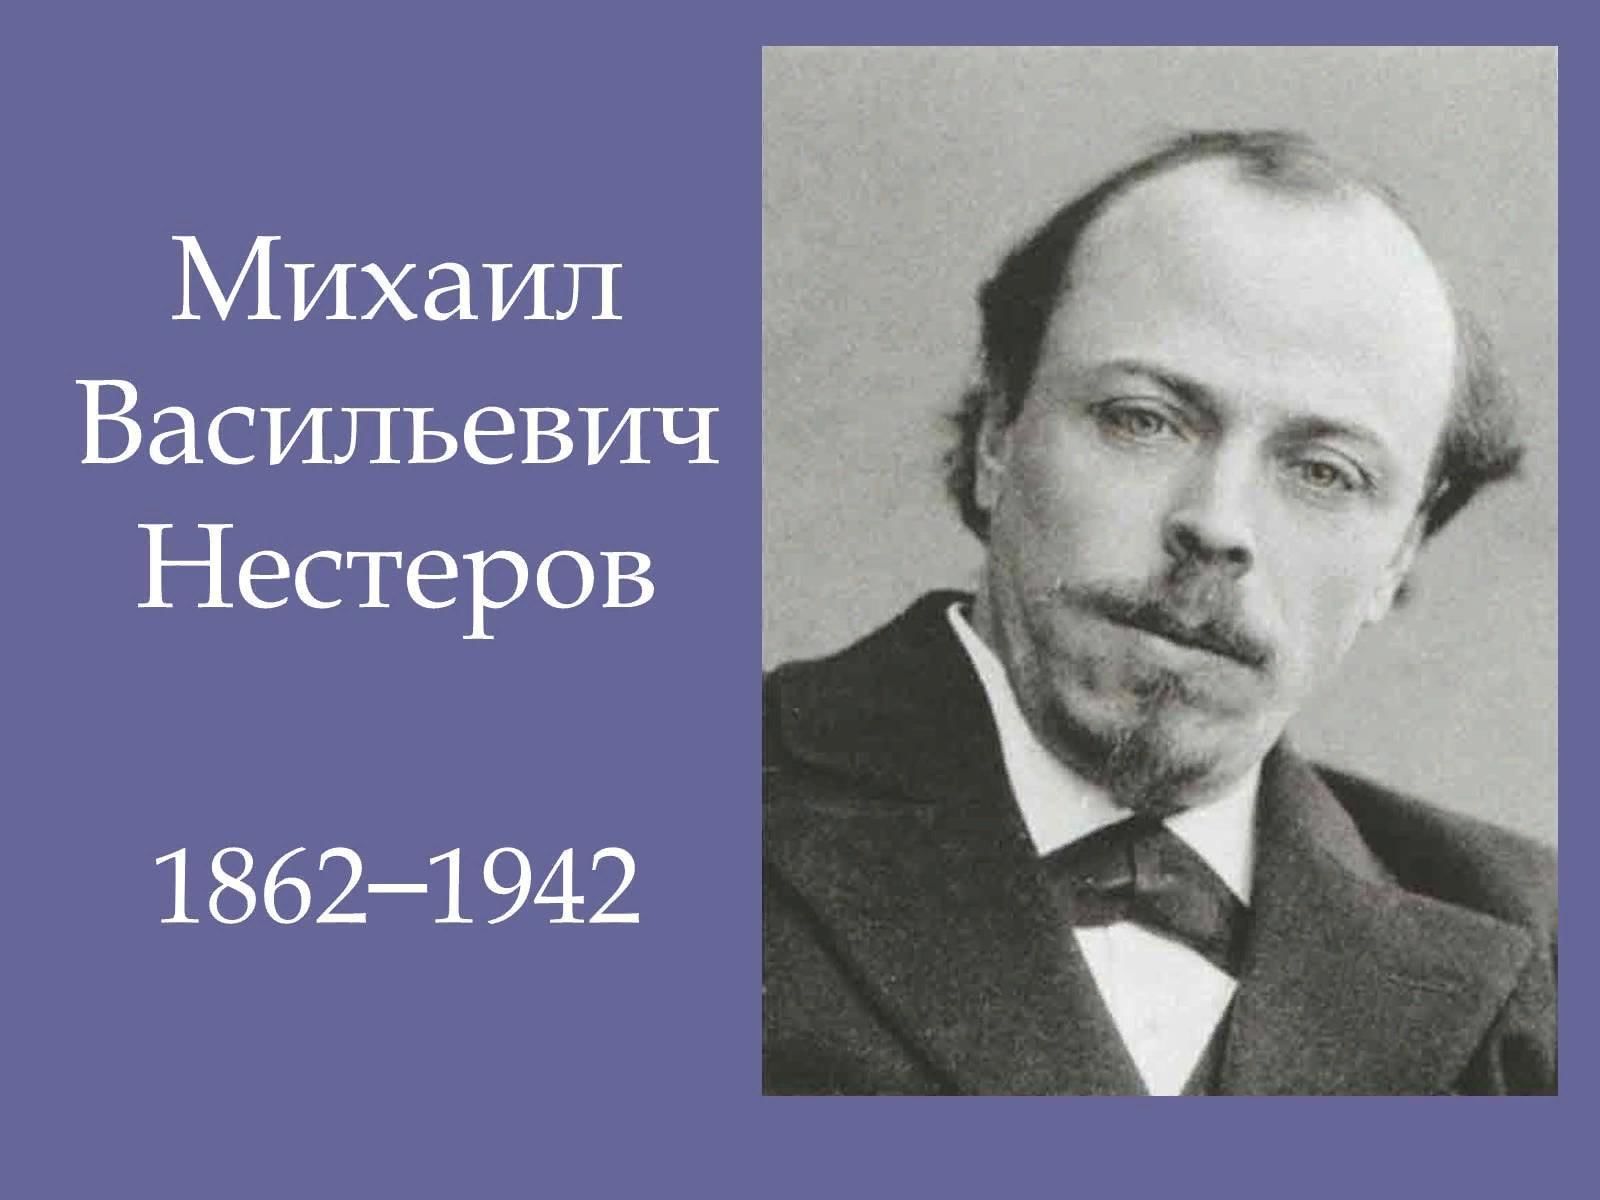 • Нестеров, Михаил Васильевич (1862—1942)